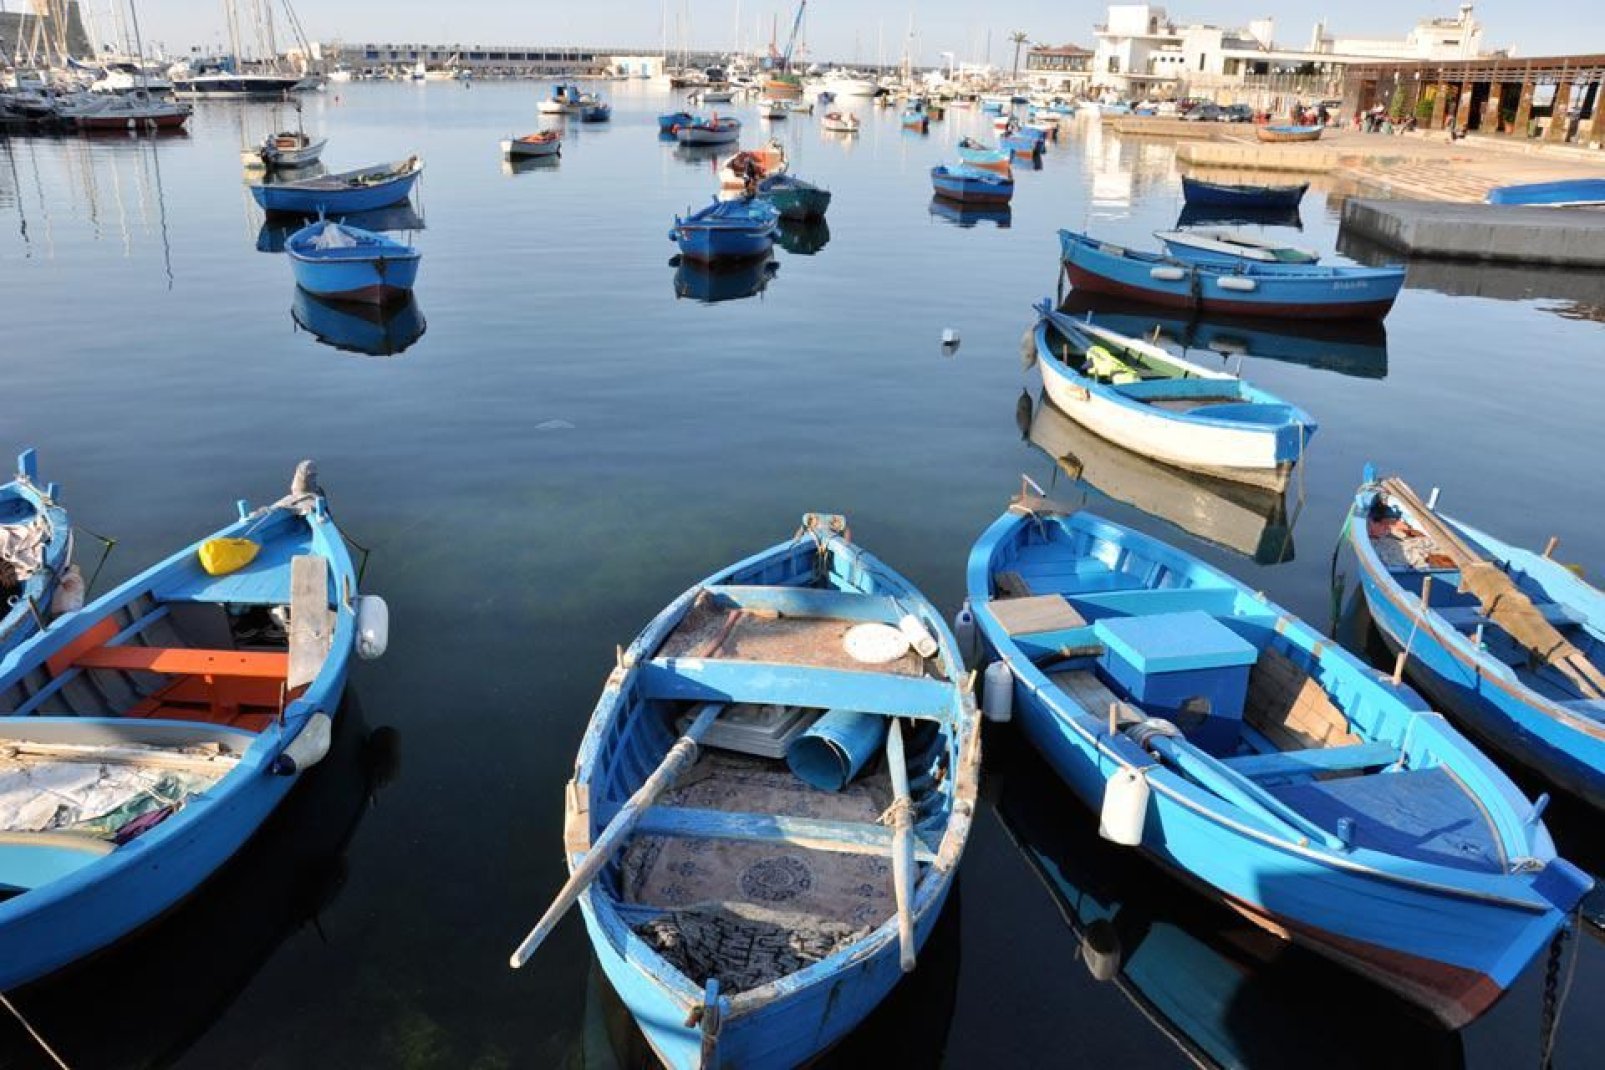 Il bacino del Porto di Bari, di circa 285 ettari, è attrezzato per diverse attività, tanto turistiche che commerciali